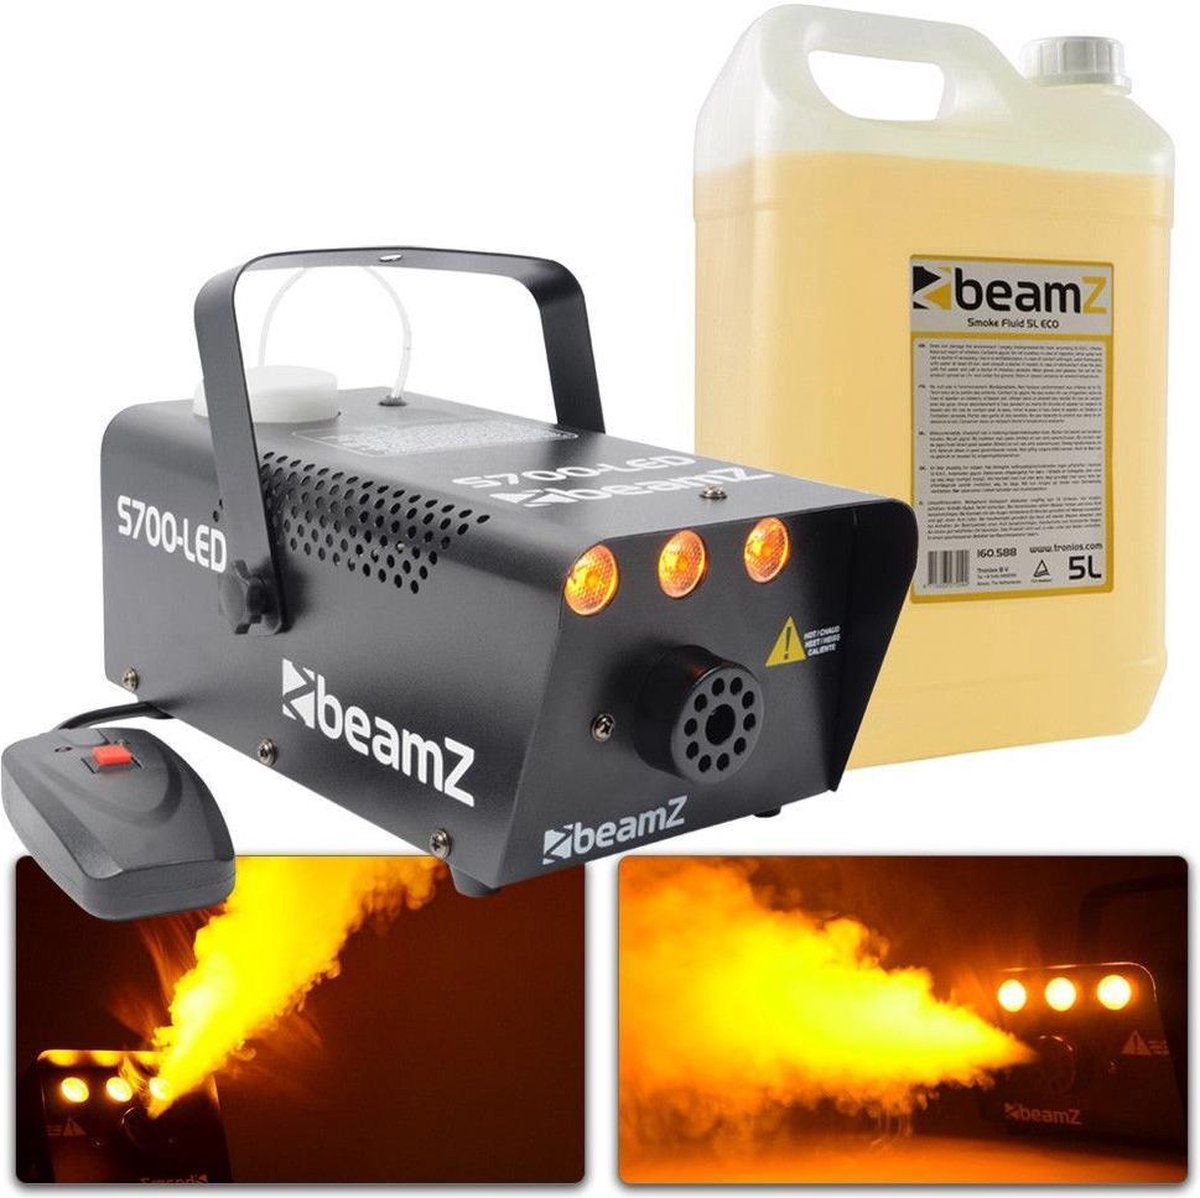 Rookmachine - BeamZ S700-LED met vlameffect en ruim 5L rookvloeistof - BeamZ